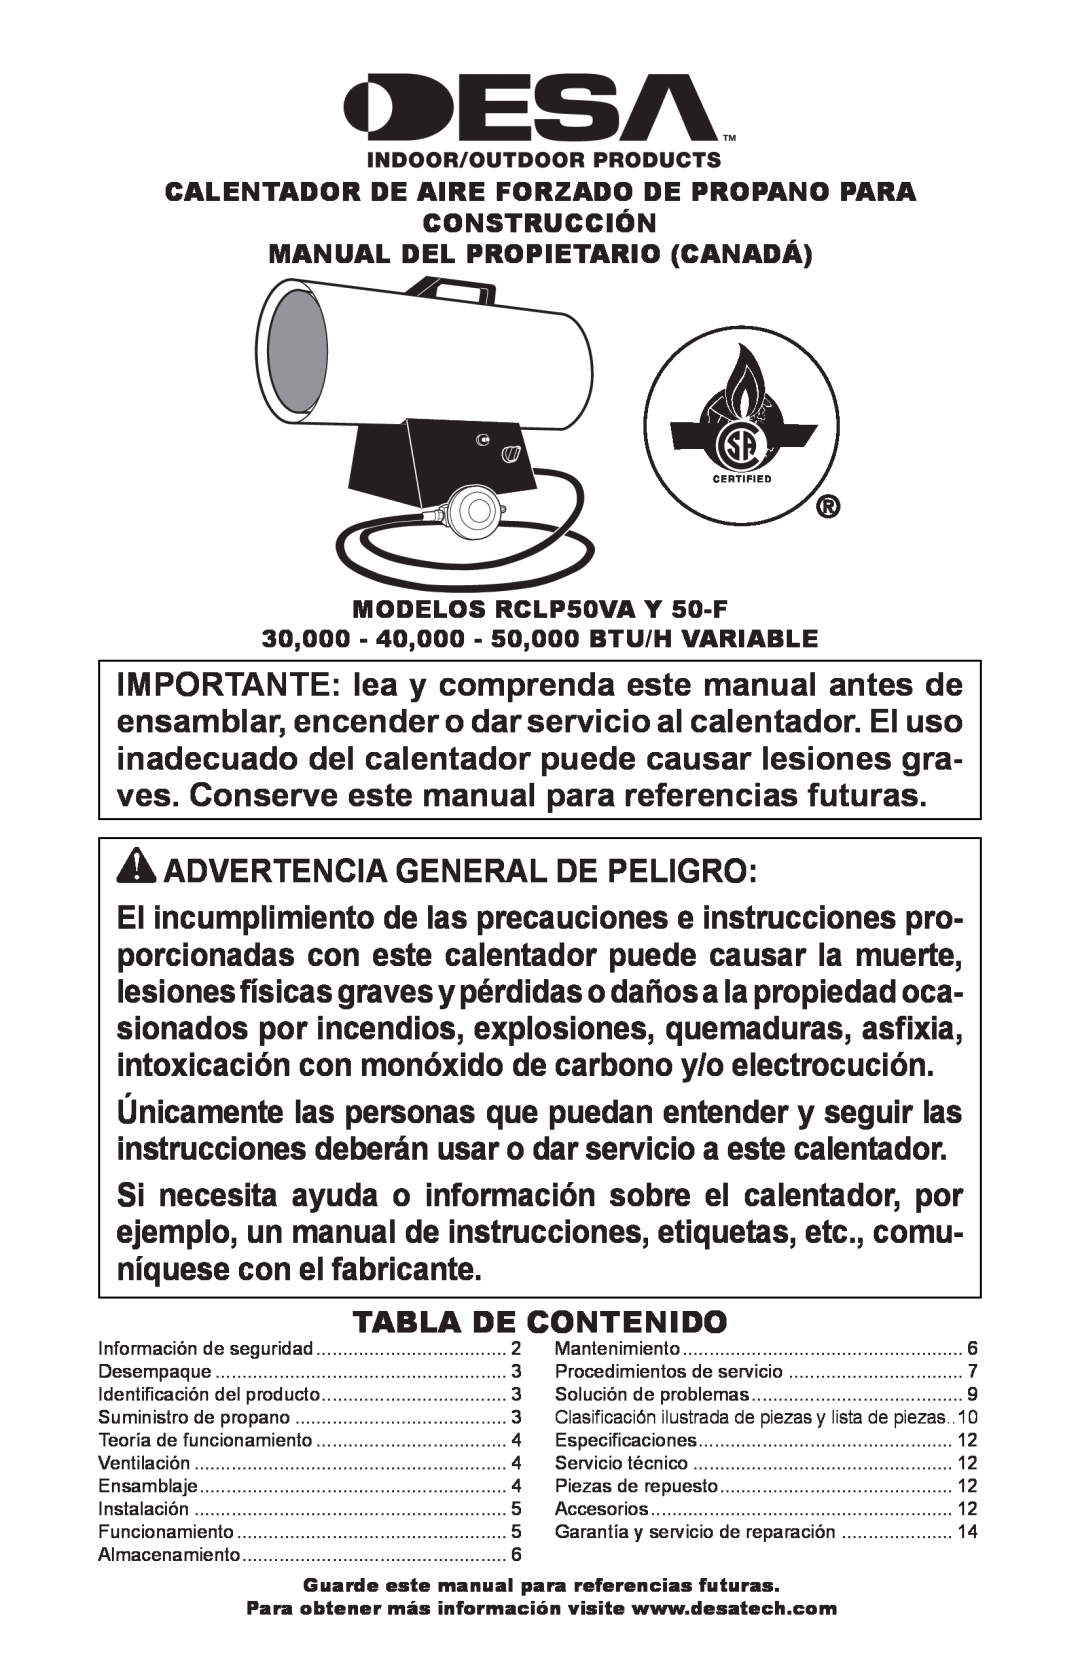 Desa RCLP50-F owner manual Advertencia General De Peligro, Tabla De Contenido 